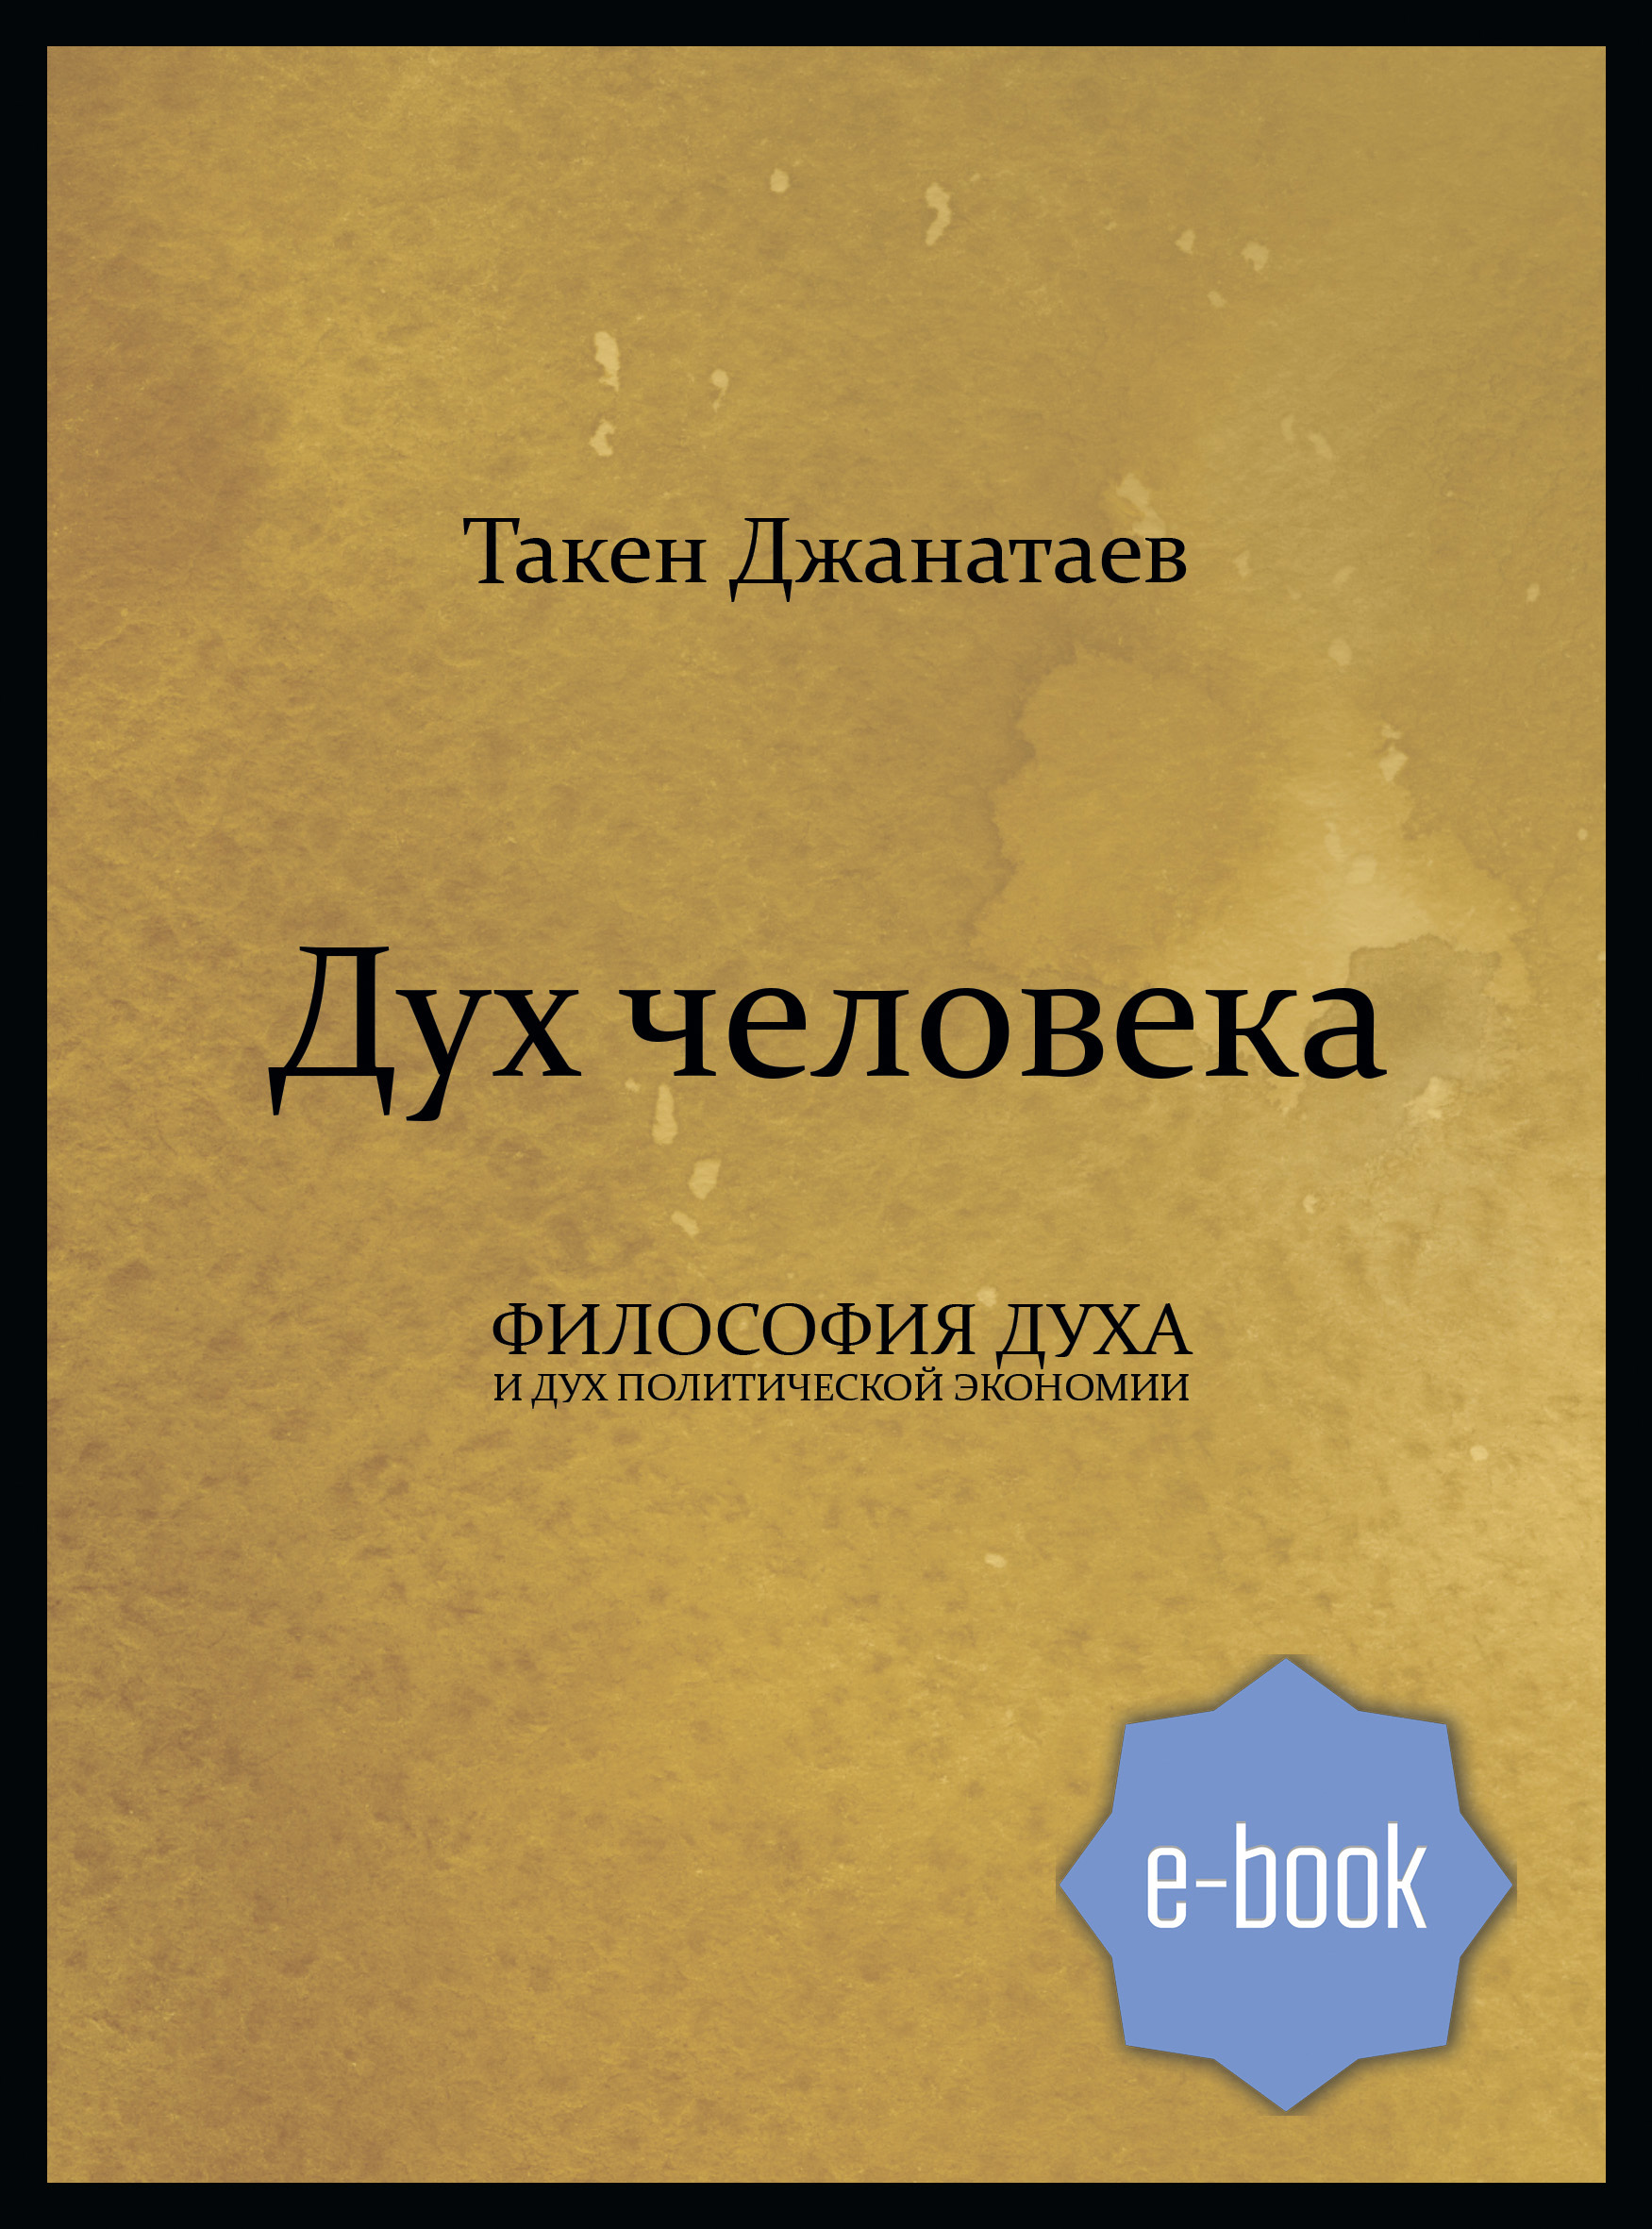 Книга Дух человека из серии , созданная Такен Джанатаев, может относится к жанру Экономика. Стоимость электронной книги Дух человека с идентификатором 45880124 составляет 150.00 руб.